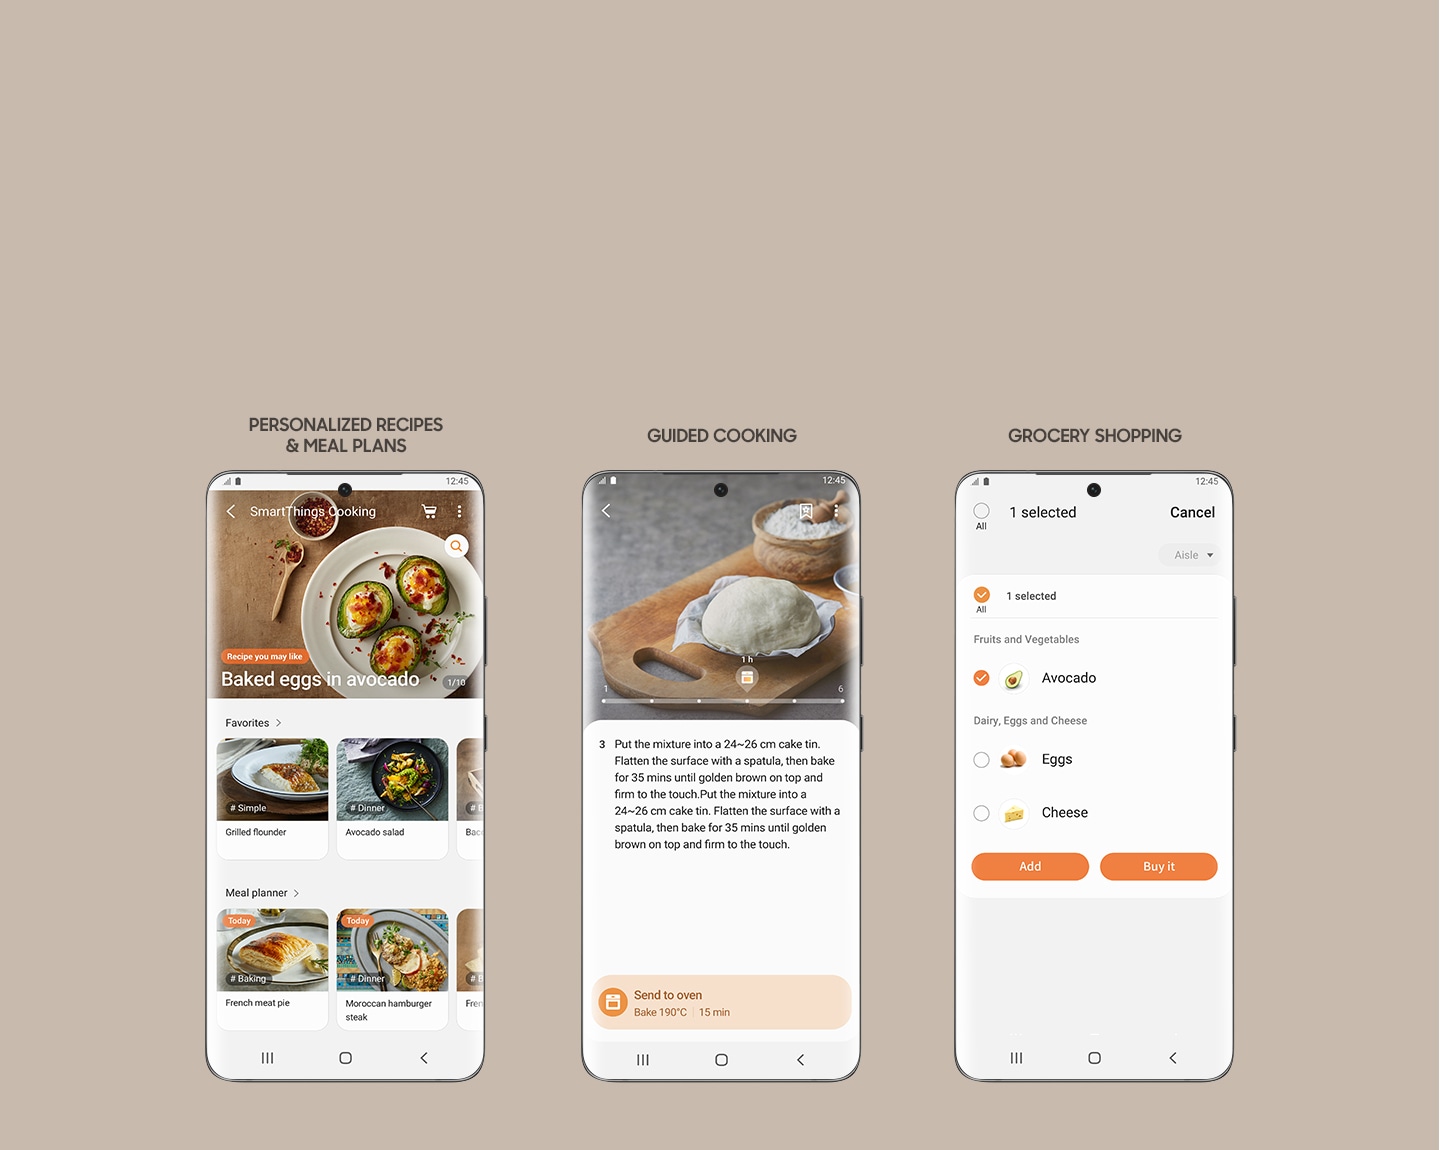 Prikazuje 3 zaslone pametnega telefona iz aplikacije SmartThings Cooking, ki vam omogoča dostop do prilagojenih receptov in načrtov obrokov, ogled vodenih navodil za kuhanje in ustvarjanje nakupovalnega seznama živil za nakup sestavin.